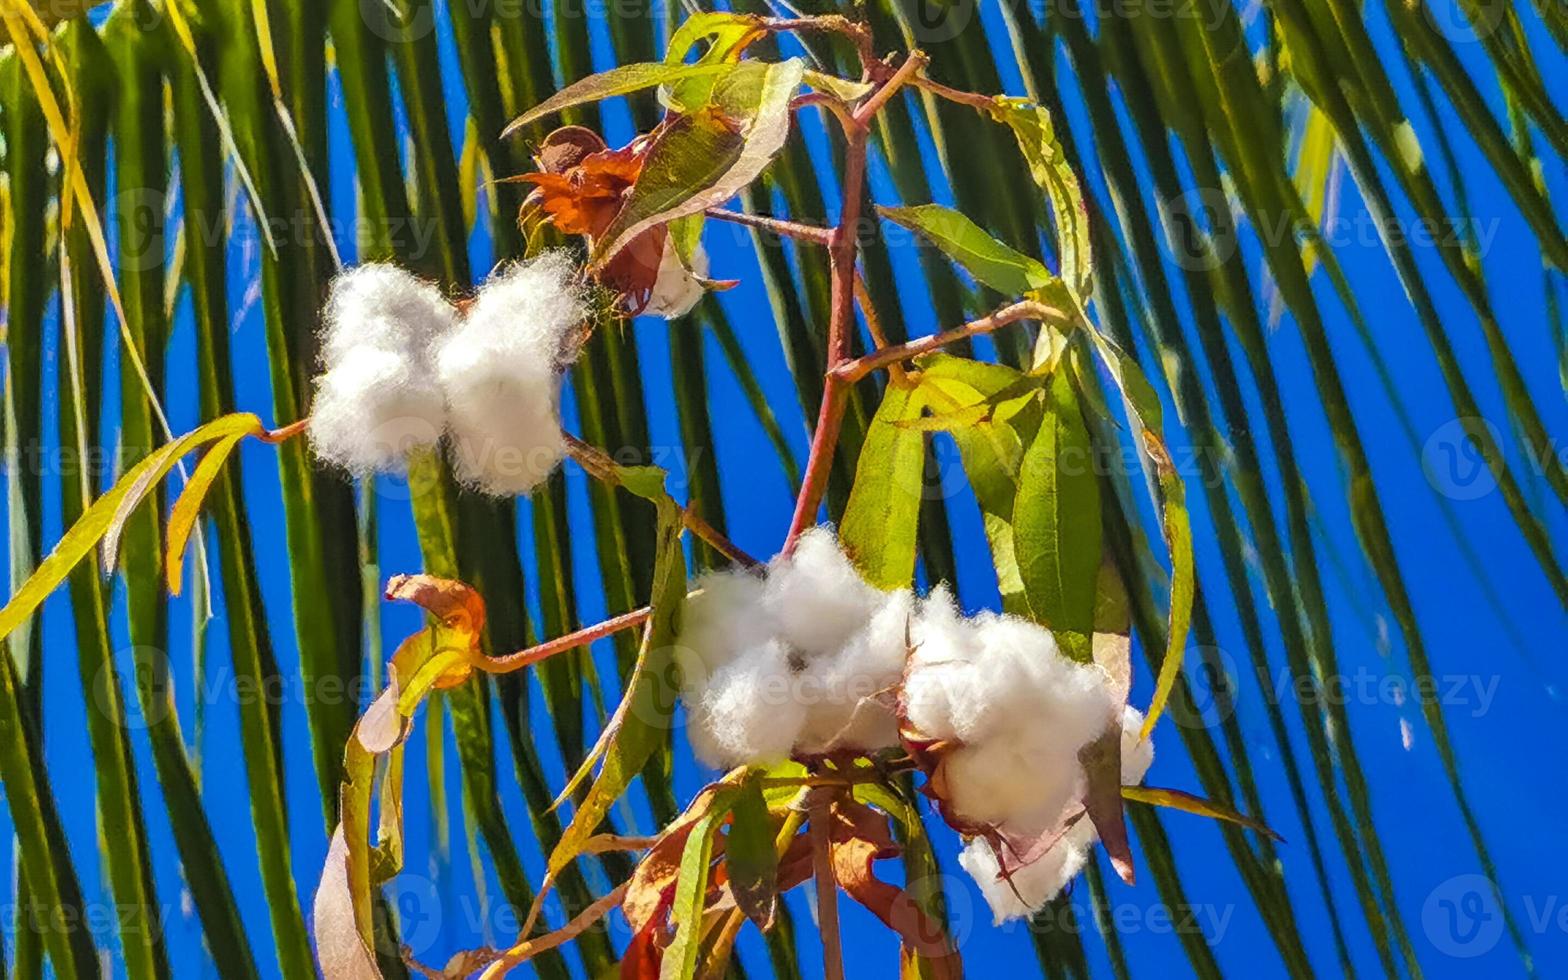 White cotton on tree or plant in Puerto Escondido Mexico. photo